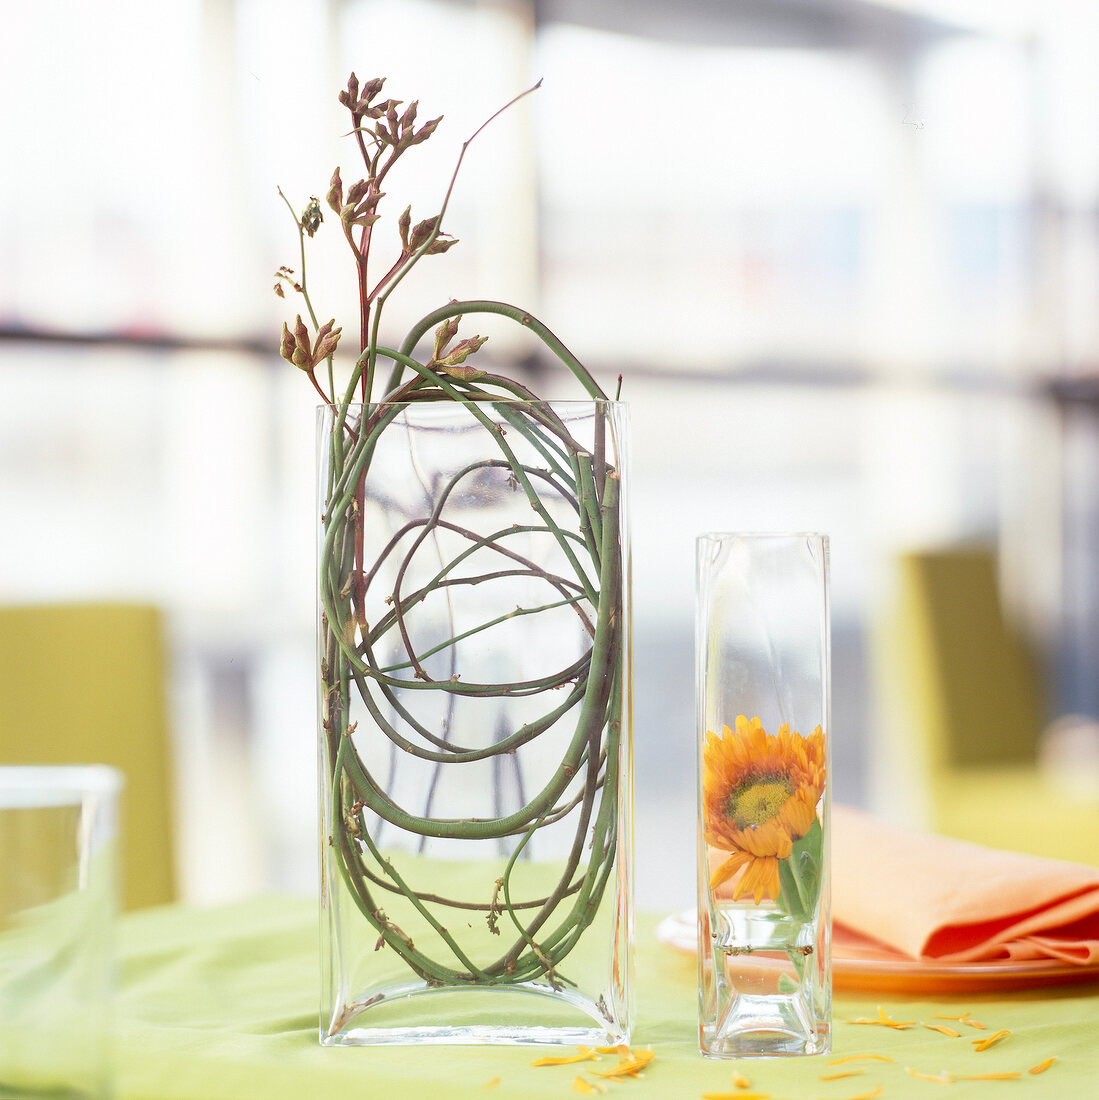 Blumendeko: Zweige in einer Glasvase und Blüte im Glas.